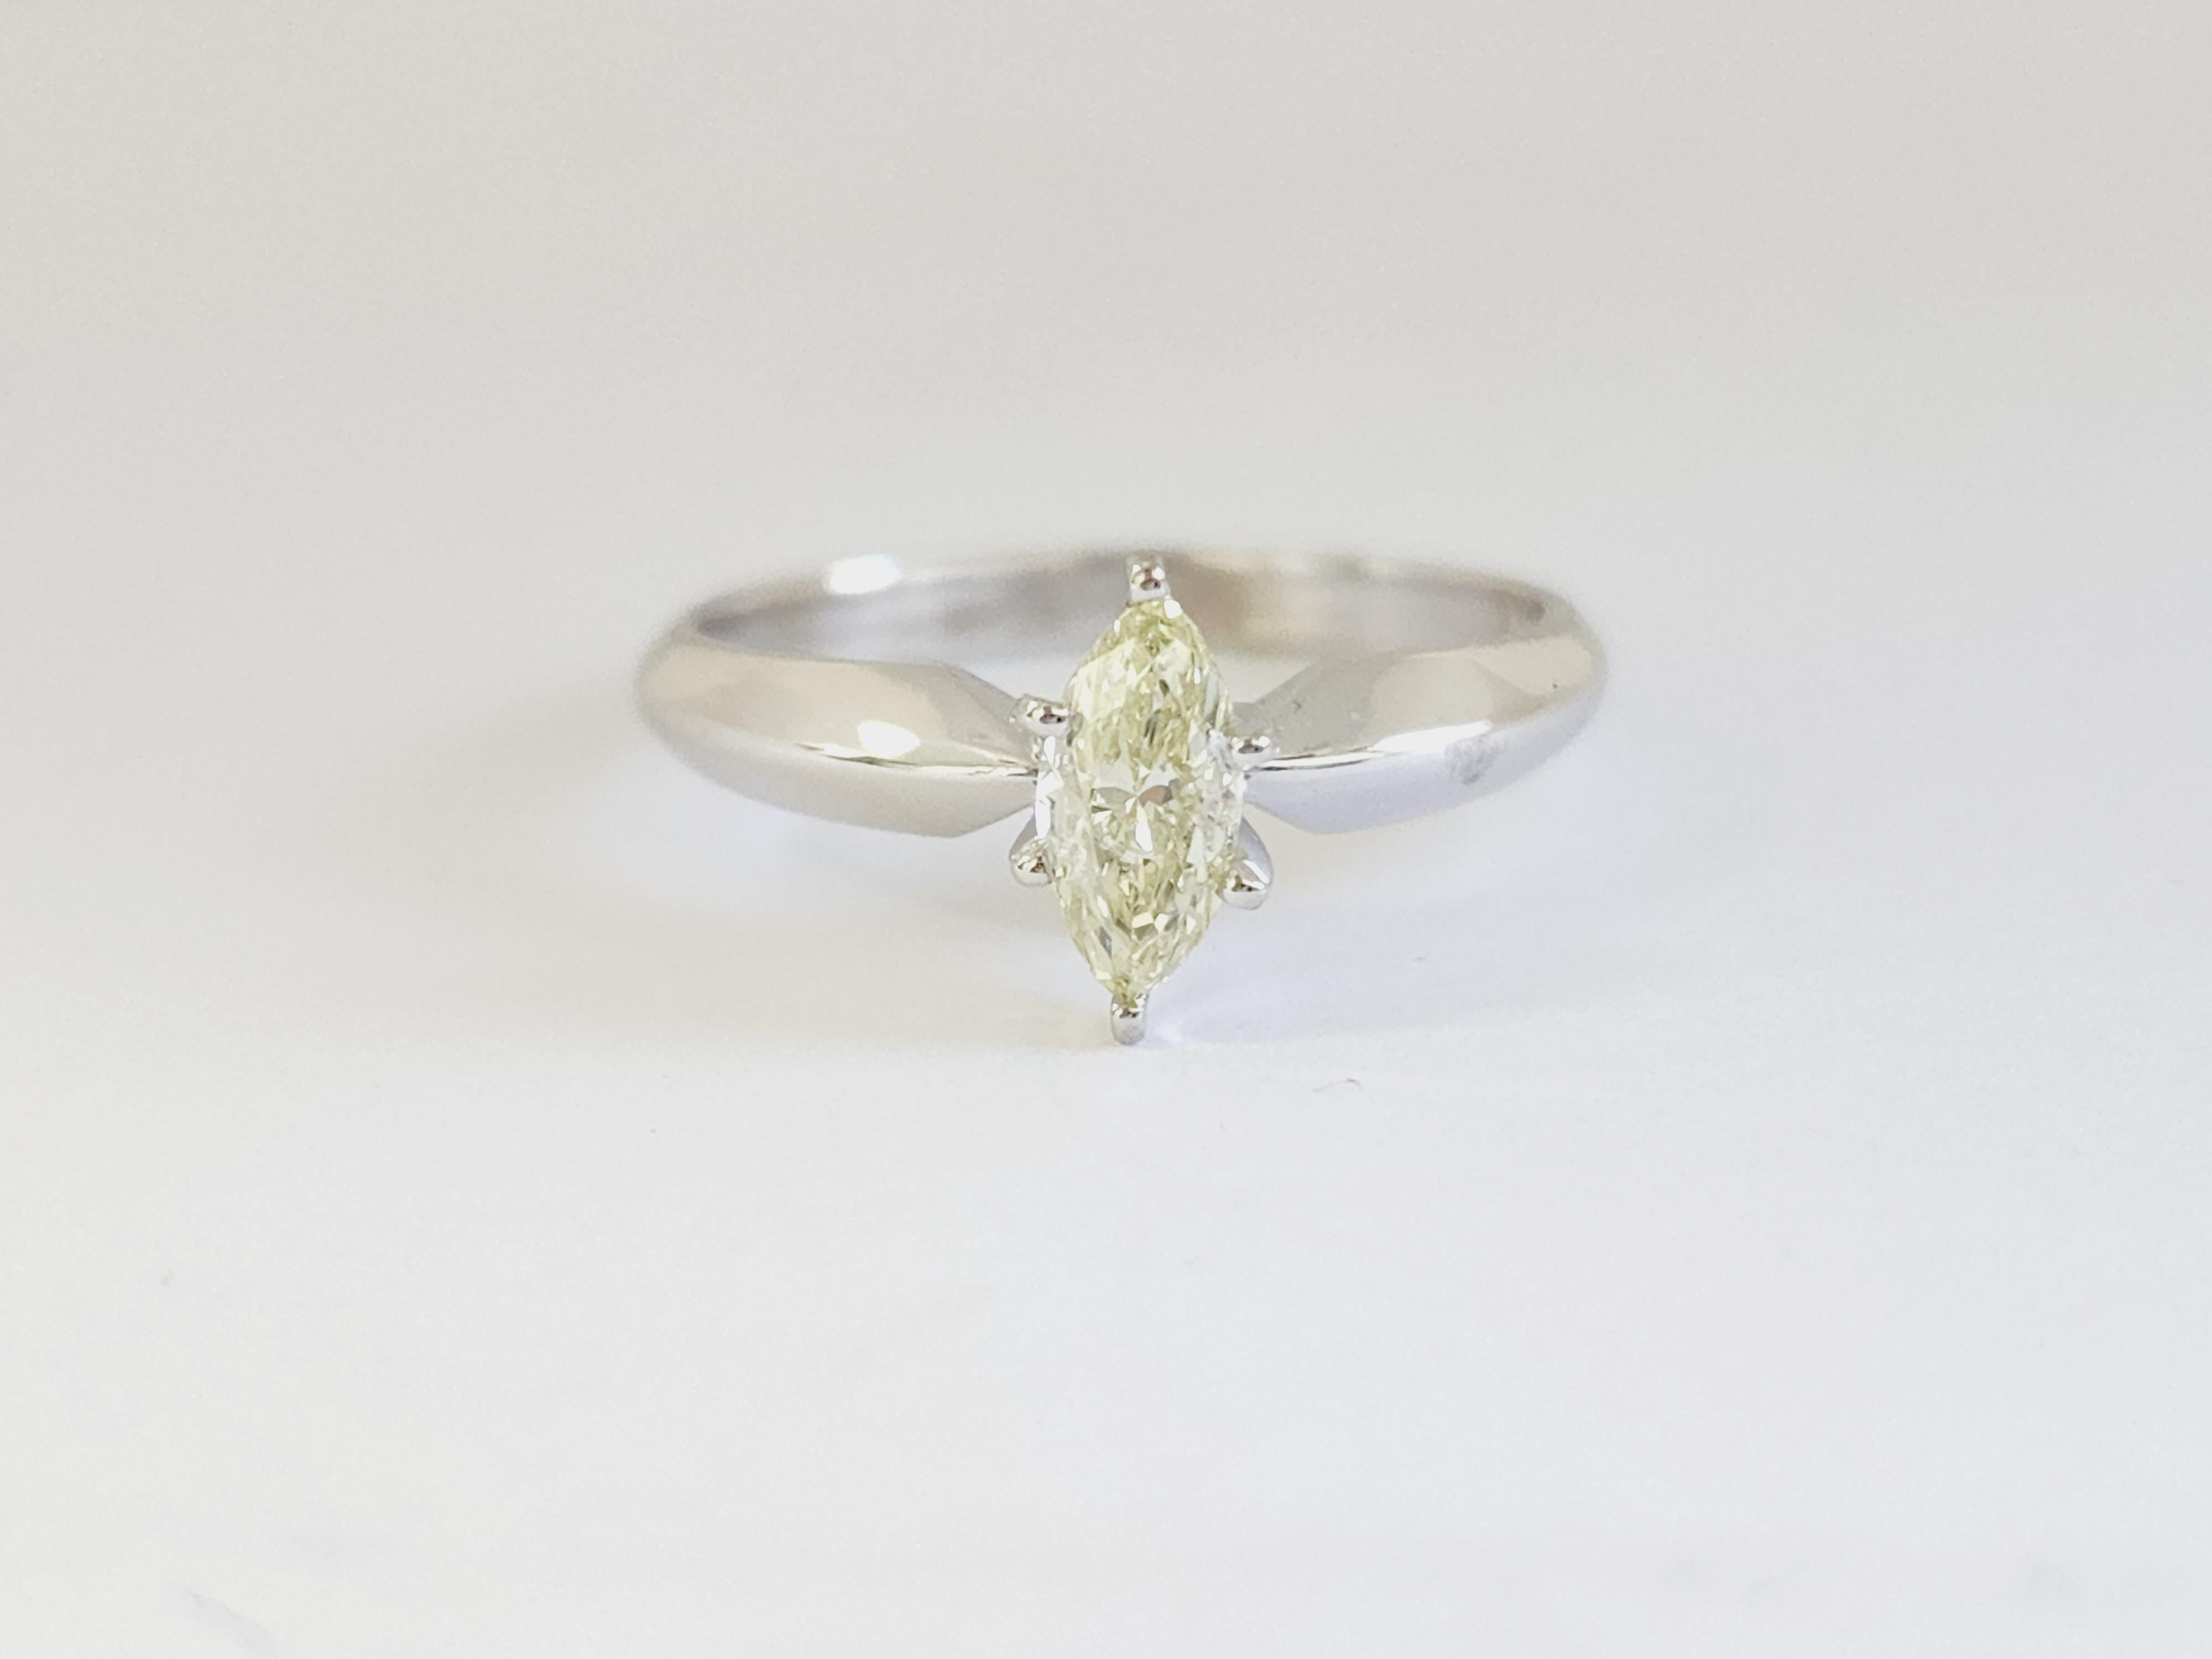 Diamant naturel de forme marquise pesant 0.50 carats GIA . serti sur or blanc 14K. 
Couleur du diamant : Jaune clair
Bague taille 7